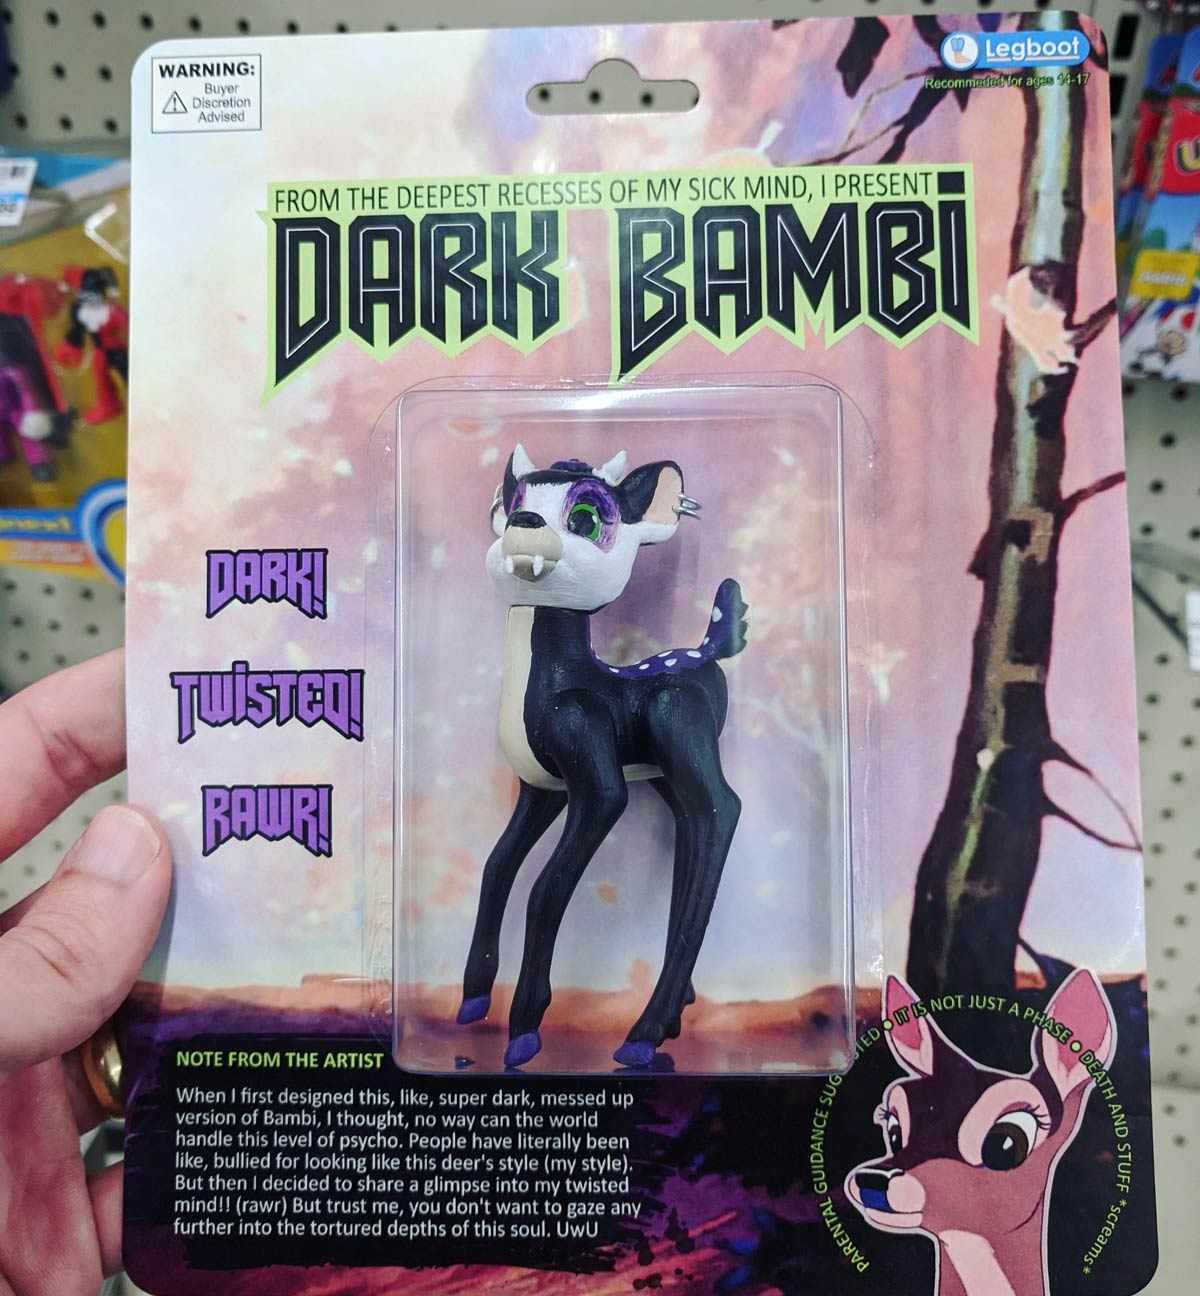 Dark Bambi